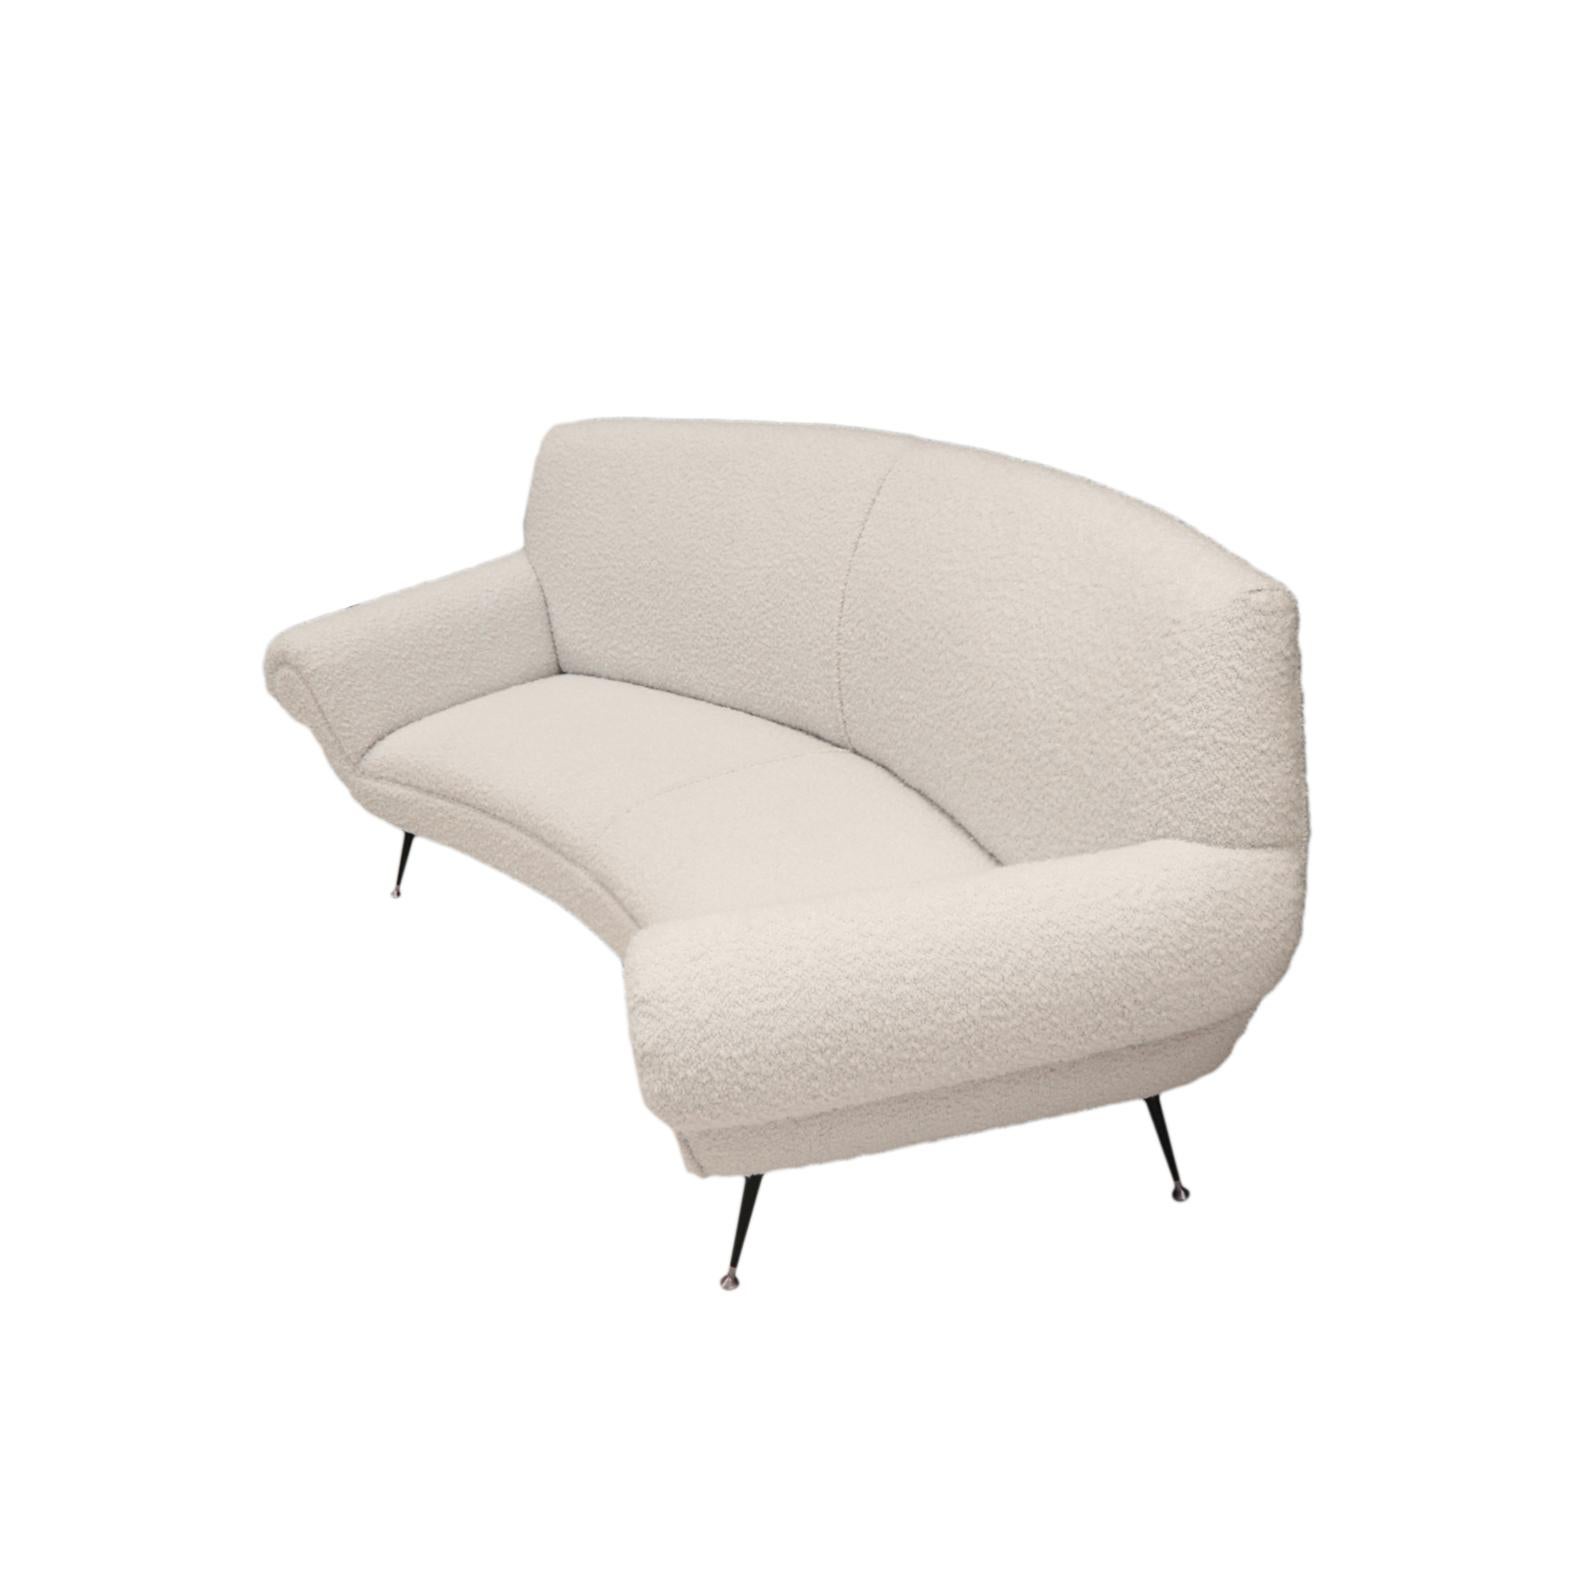 Le canapé en bouclette blanche conçu par le célèbre designer italien Gigi Radice et produit par Minotti présente l'alliance parfaite de l'artisanat et du design contemporain. Icone, connu pour ses contributions emblématiques au mobilier moderne du